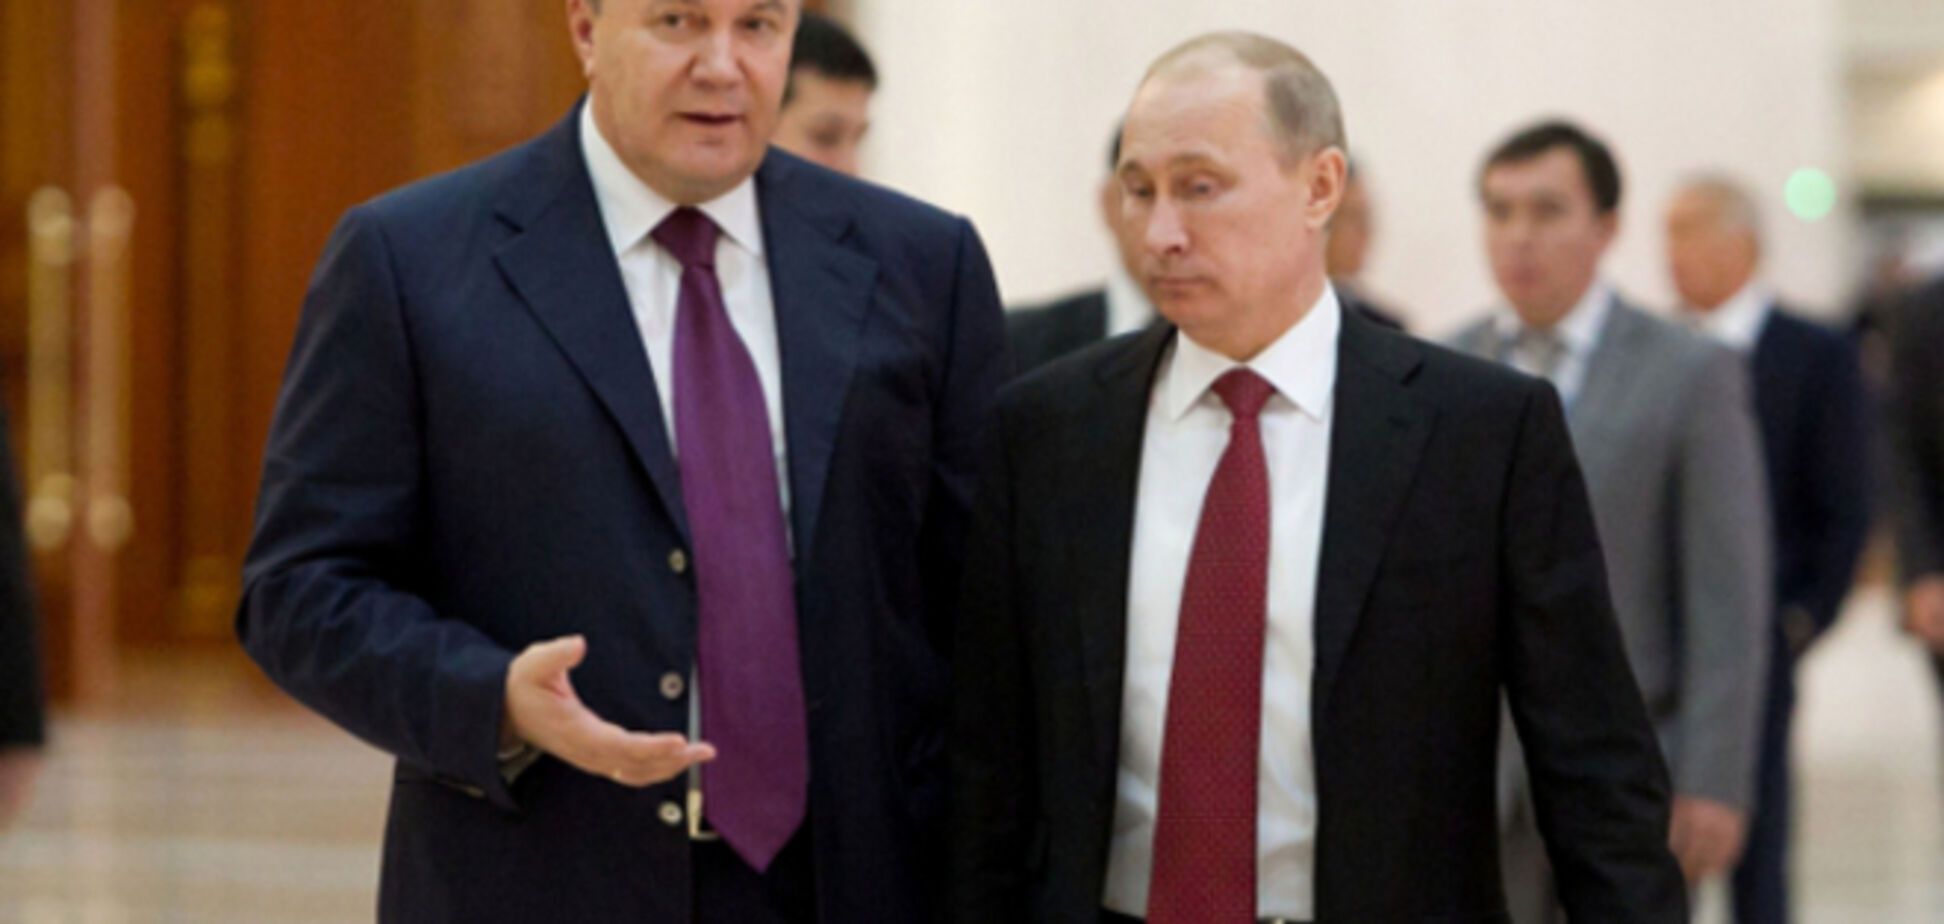 Герман рассказала, что Янукович считал себя выше Путина